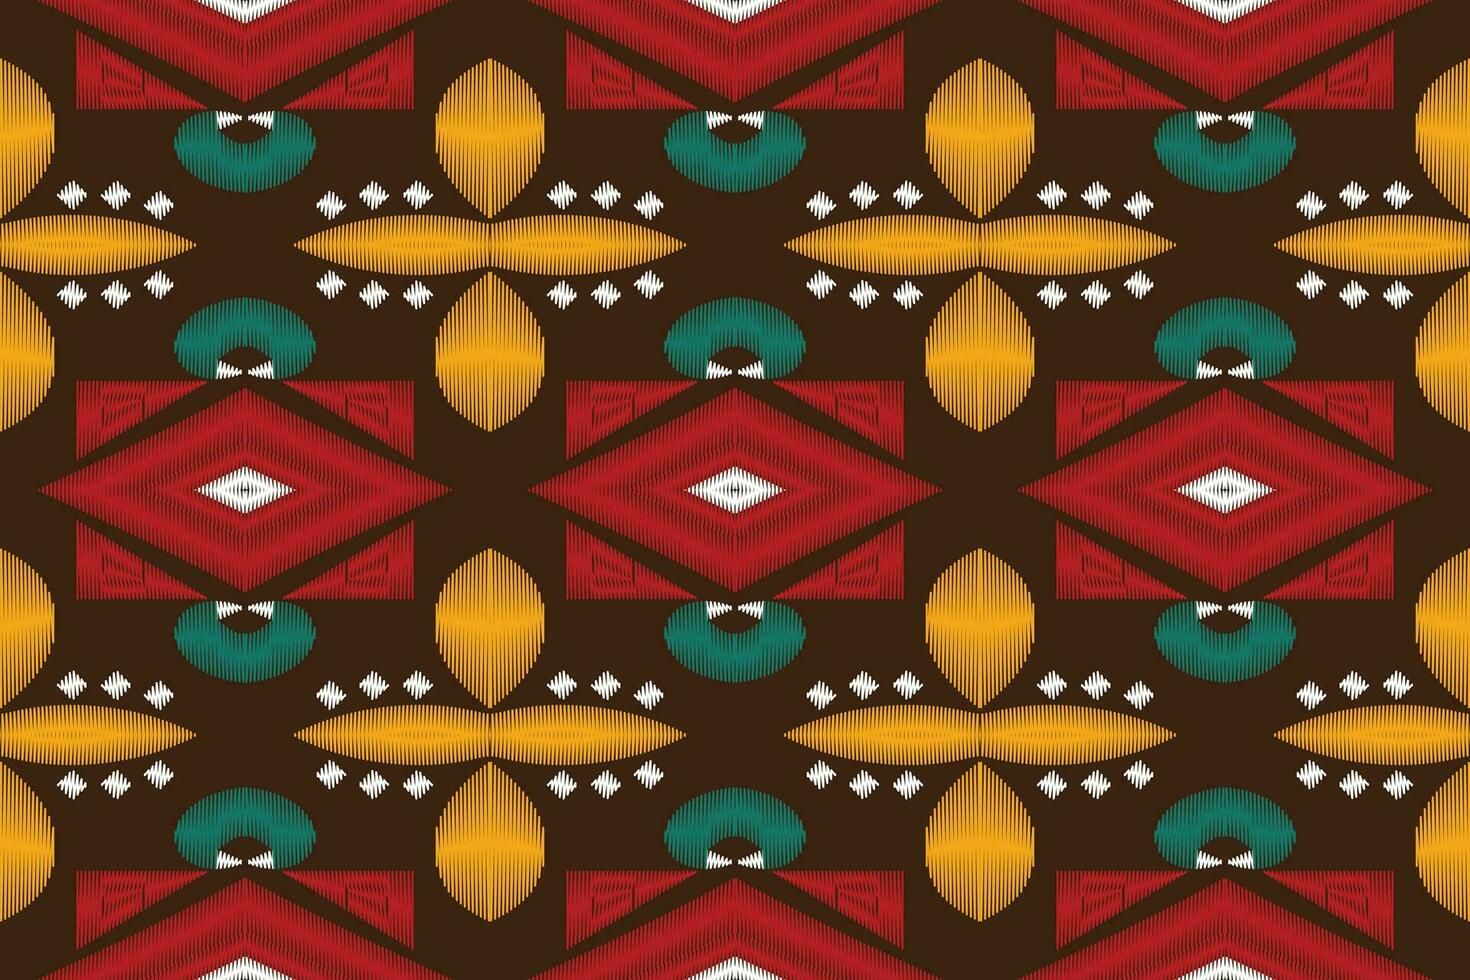 motivo ikat paisley bordado fundo. ikat asteca geométrico étnico oriental padronizar tradicional.asteca estilo abstrato vetor ilustração.design para textura,tecido,vestuário,embrulho,sarongue.